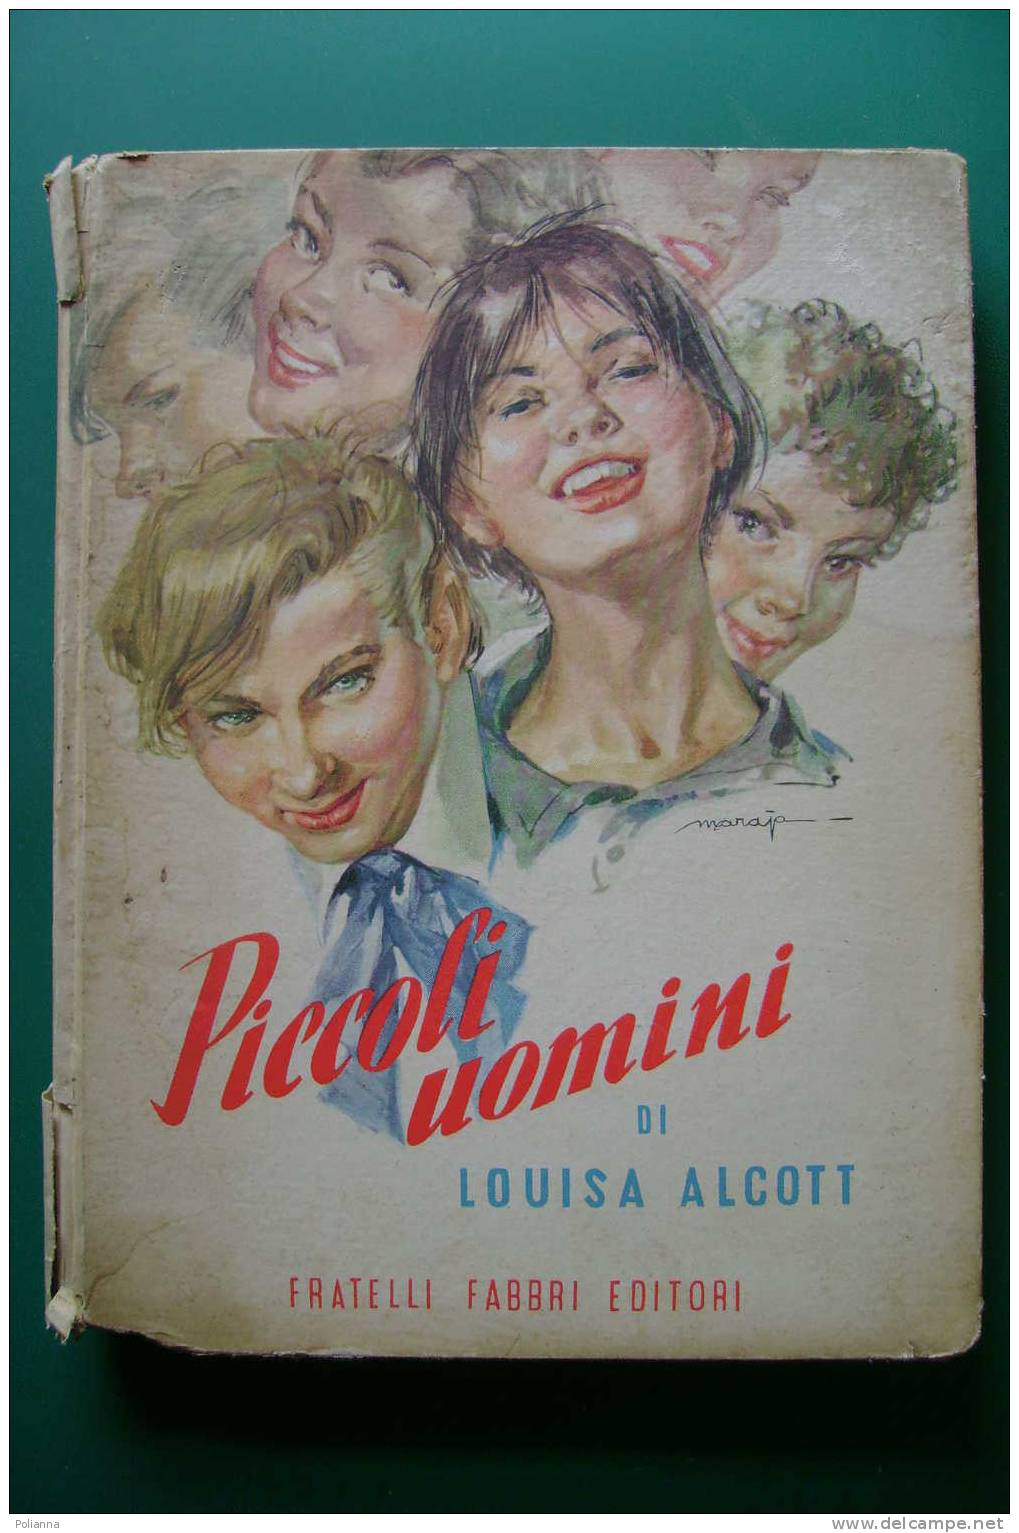 PDM/3 Louisa Alcott PICCOLI UOMINI F.lli Fabbri 1955 - Illustrazioni Maraja - Anciens